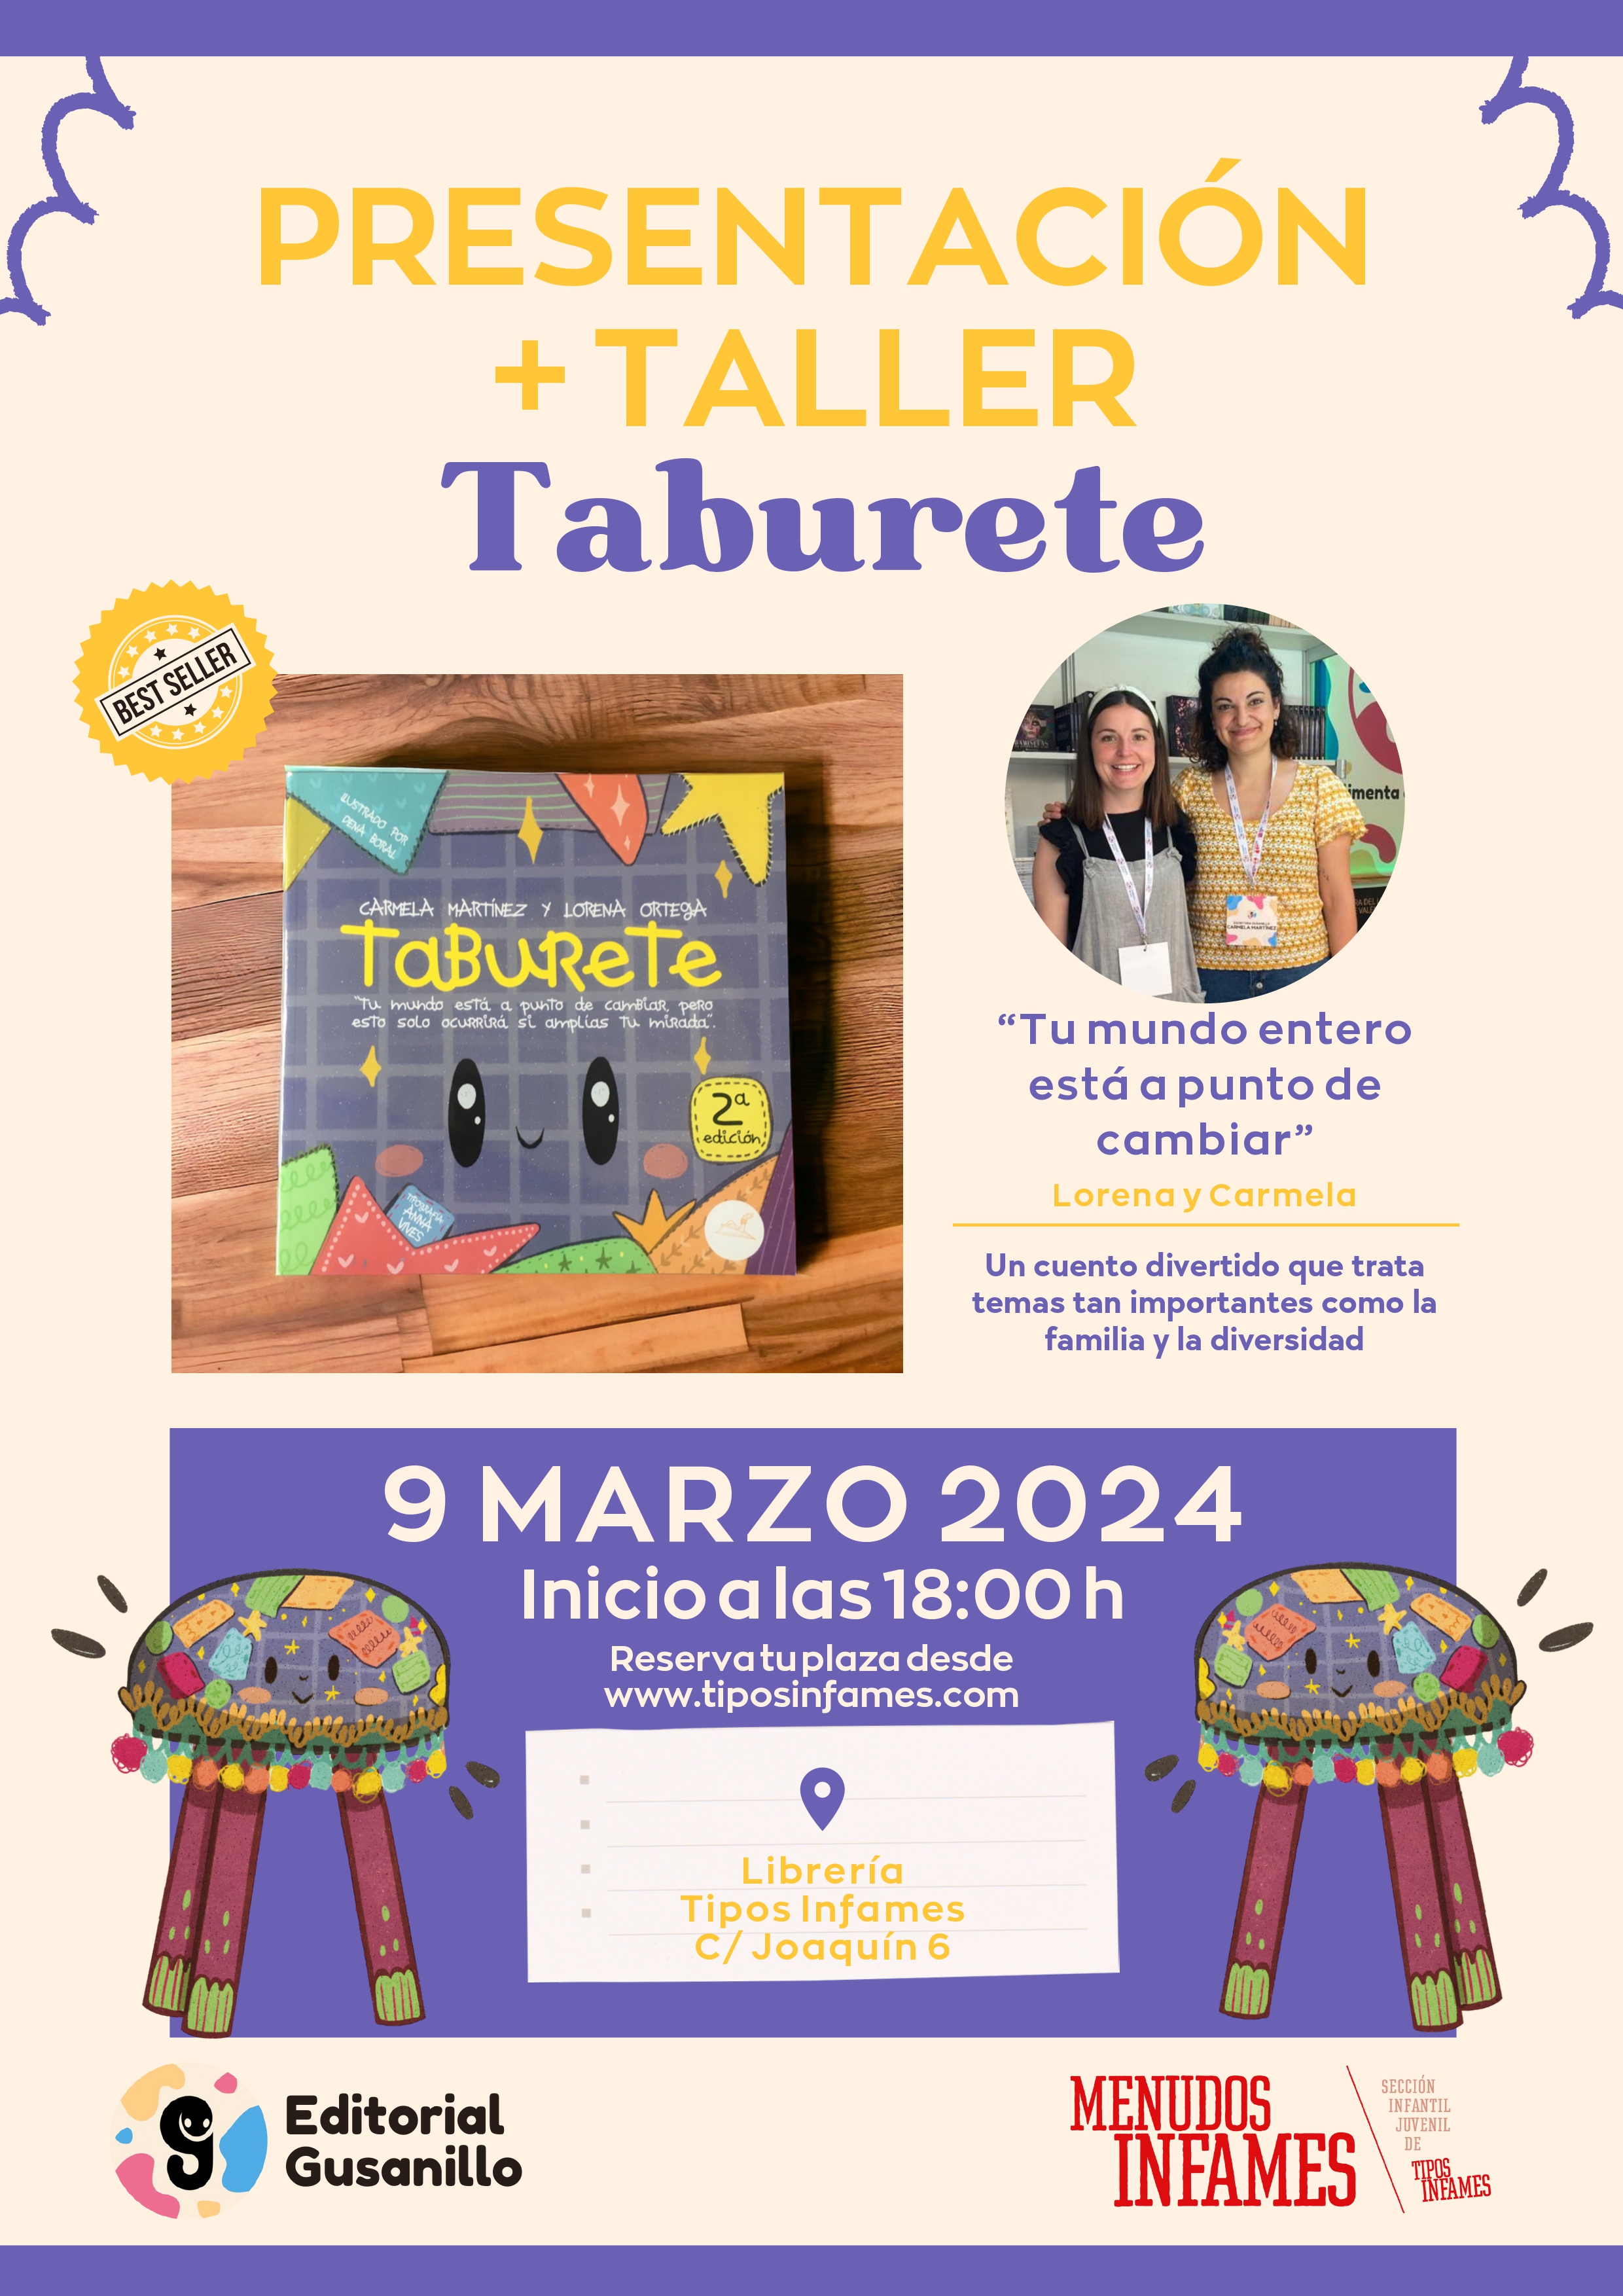 Cuentacuentos y taller: Taburete, de Carmela Martínez y Lorena Ortega